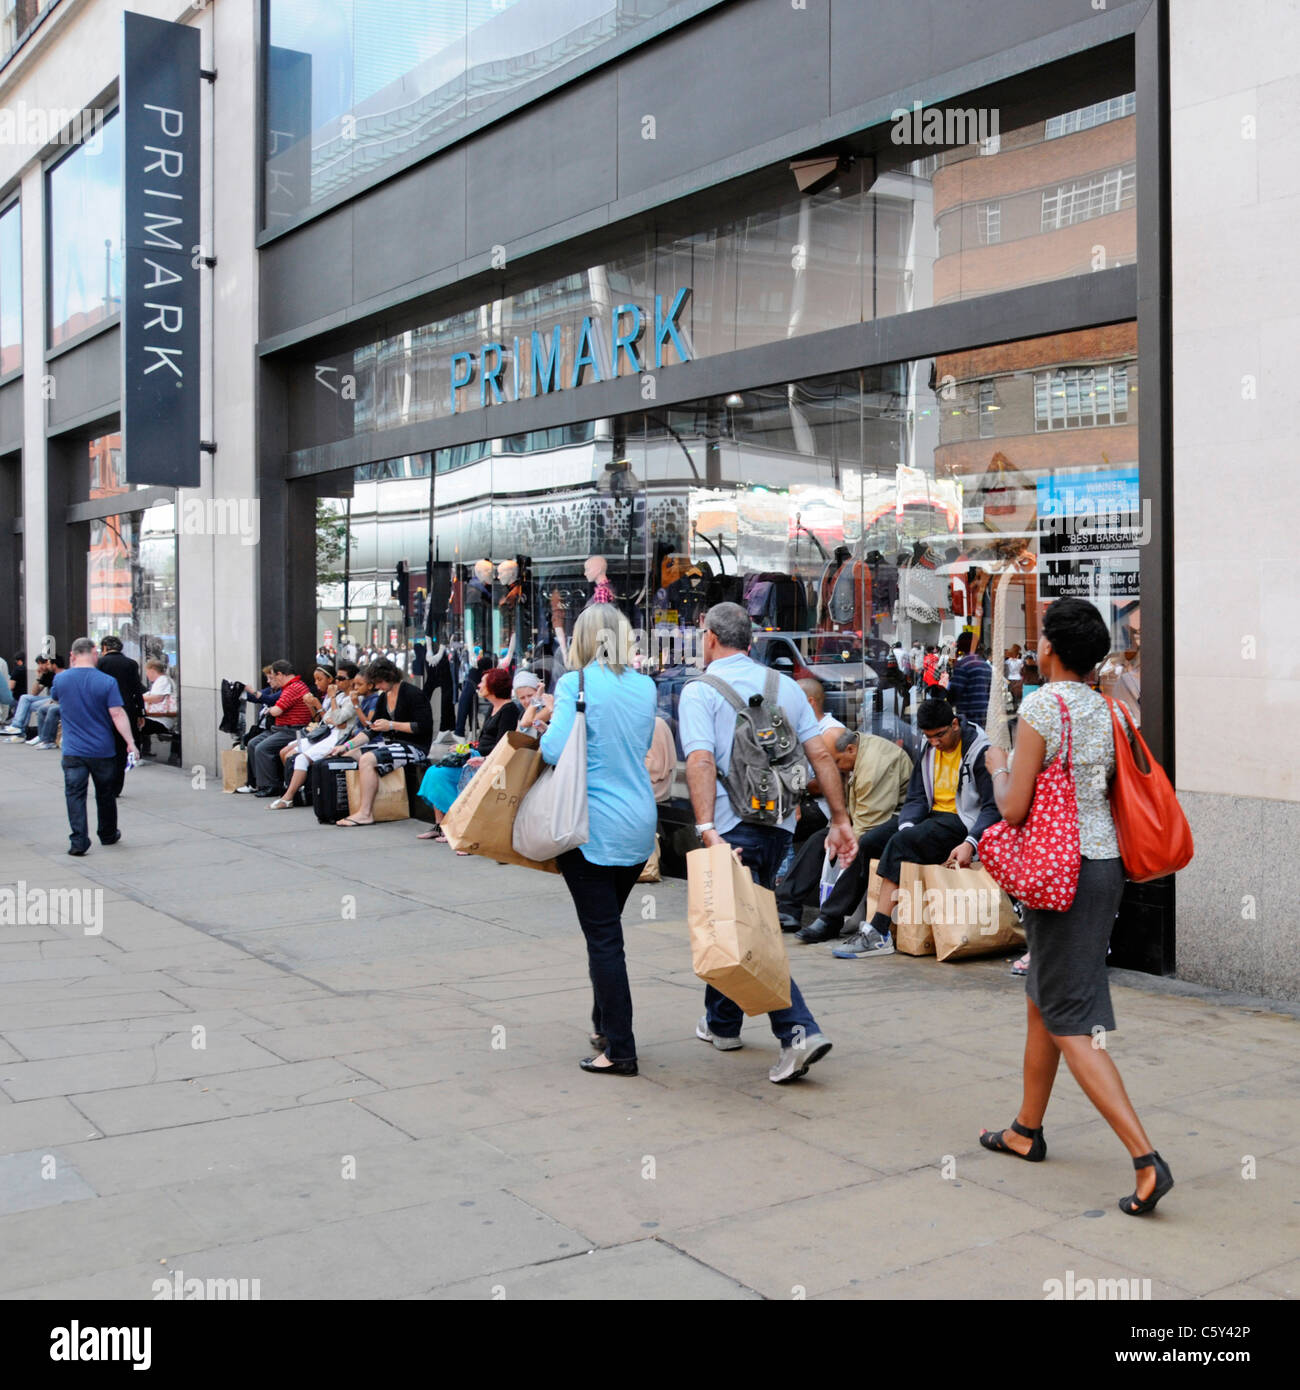 Les consommateurs et les sacs en papier brun en passant devant ou assis sur un rebord de fenêtre boutique vêtements Primark Oxford Street scene West End de Londres Angleterre Royaume-uni Banque D'Images